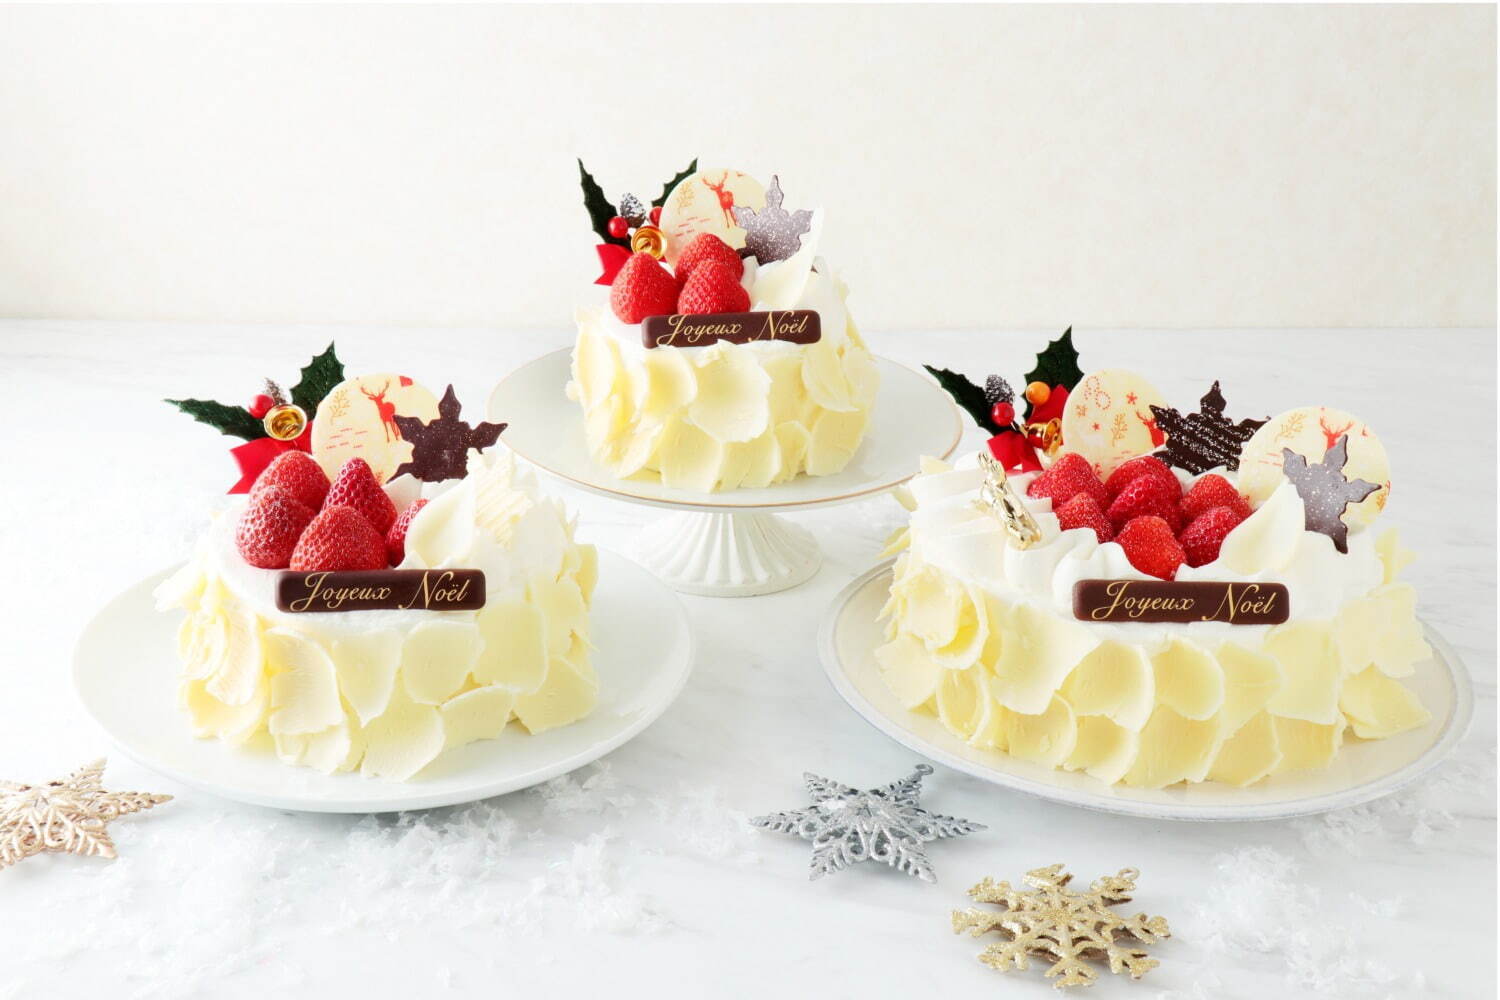 ベルアメールの2022年クリスマスケーキ、“雪”のような繊細ショートケーキなど